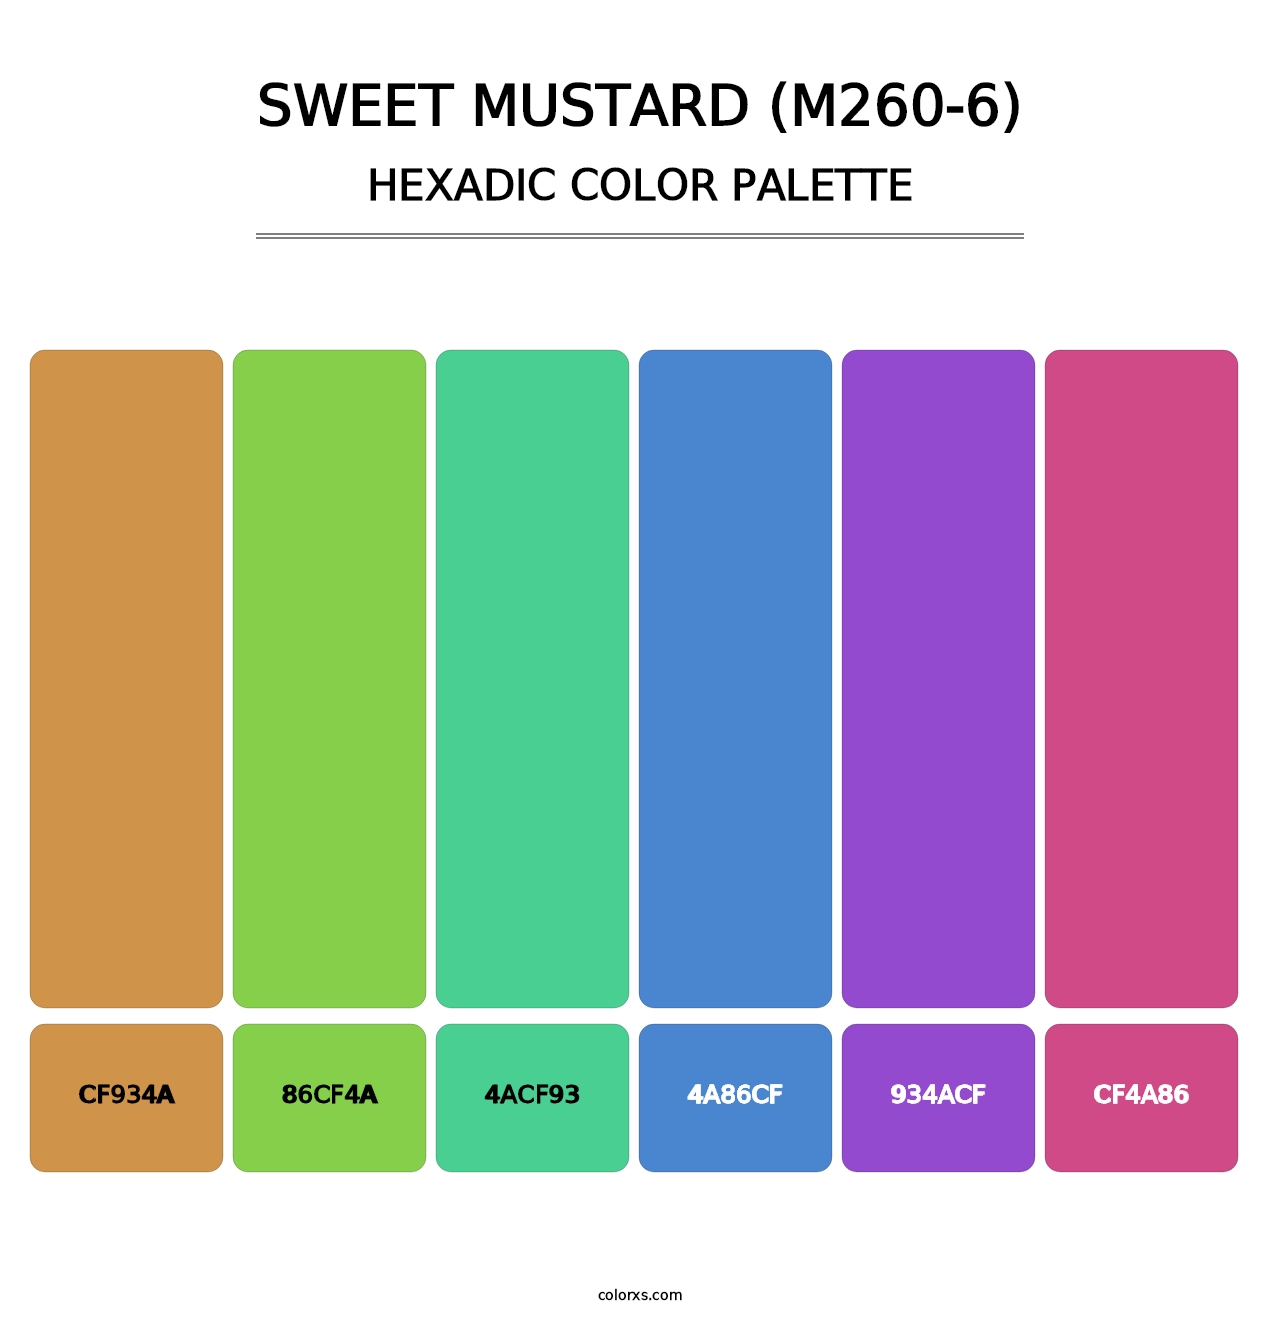 Sweet Mustard (M260-6) - Hexadic Color Palette